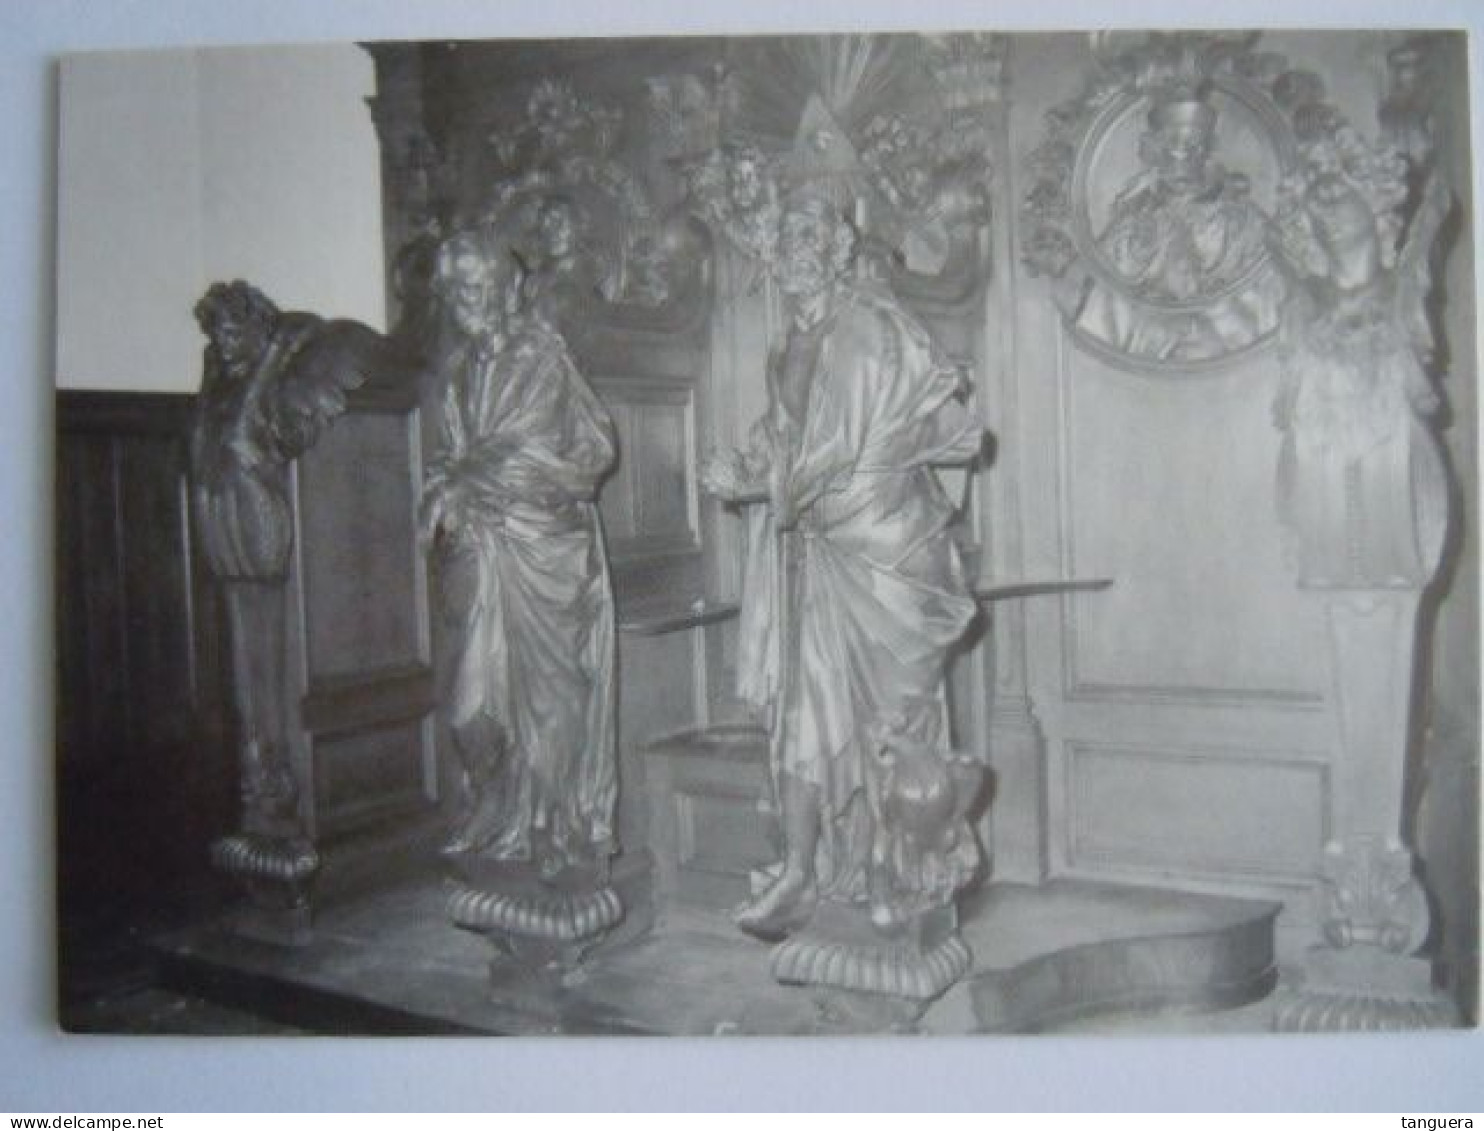 5 cpa St. Catharinaparochie Stabroek Pastorij kerk preekstoel biechtstoel hoofdaltaar orgel form 10,5 x 15 cm (701)